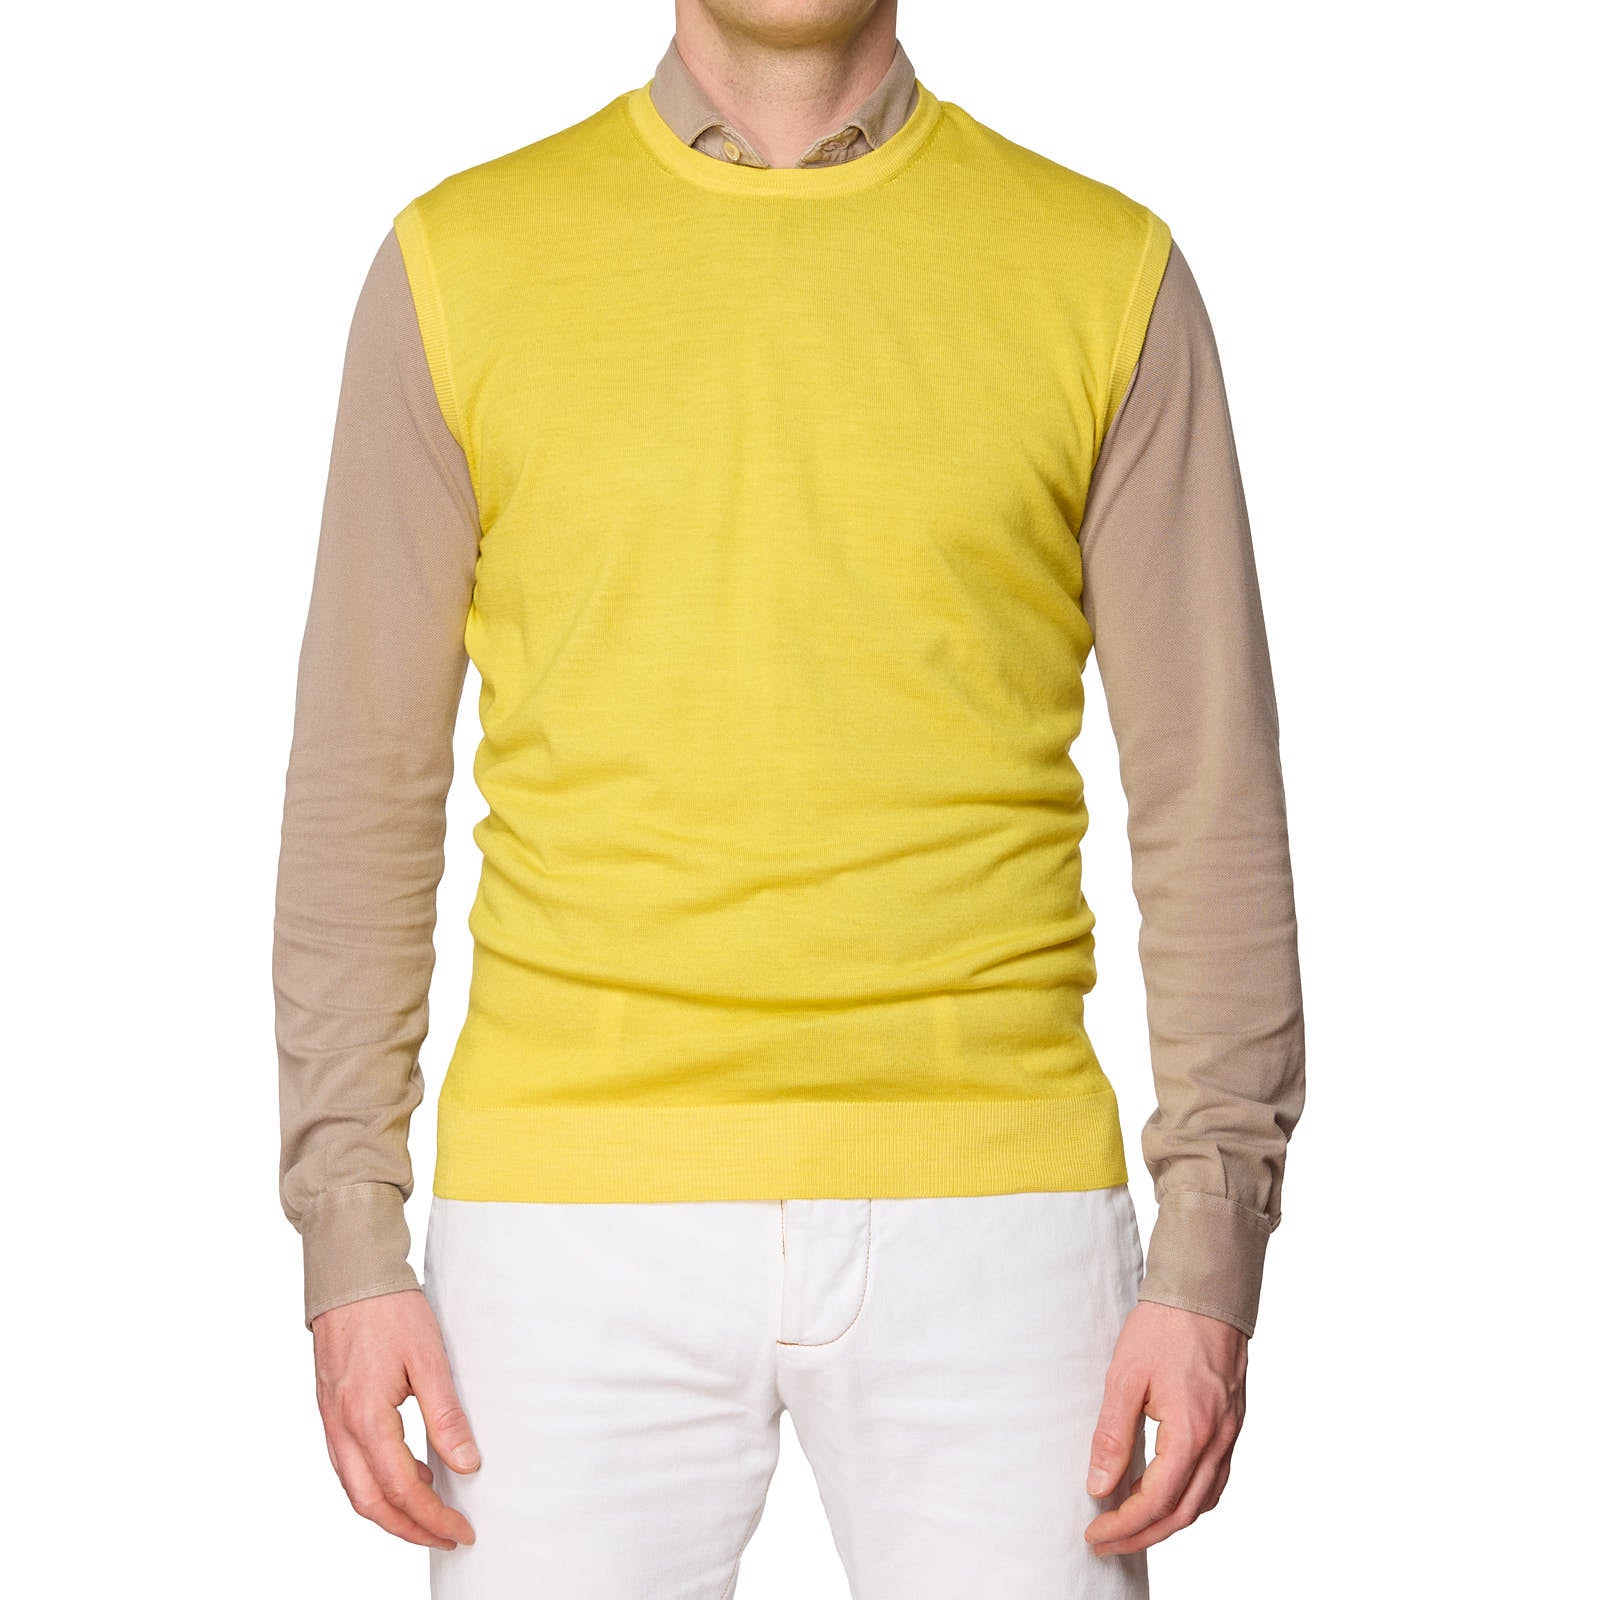 ONES Yellow Loro Piana Wool Knit Sweater Vest EU 52 NEW US L